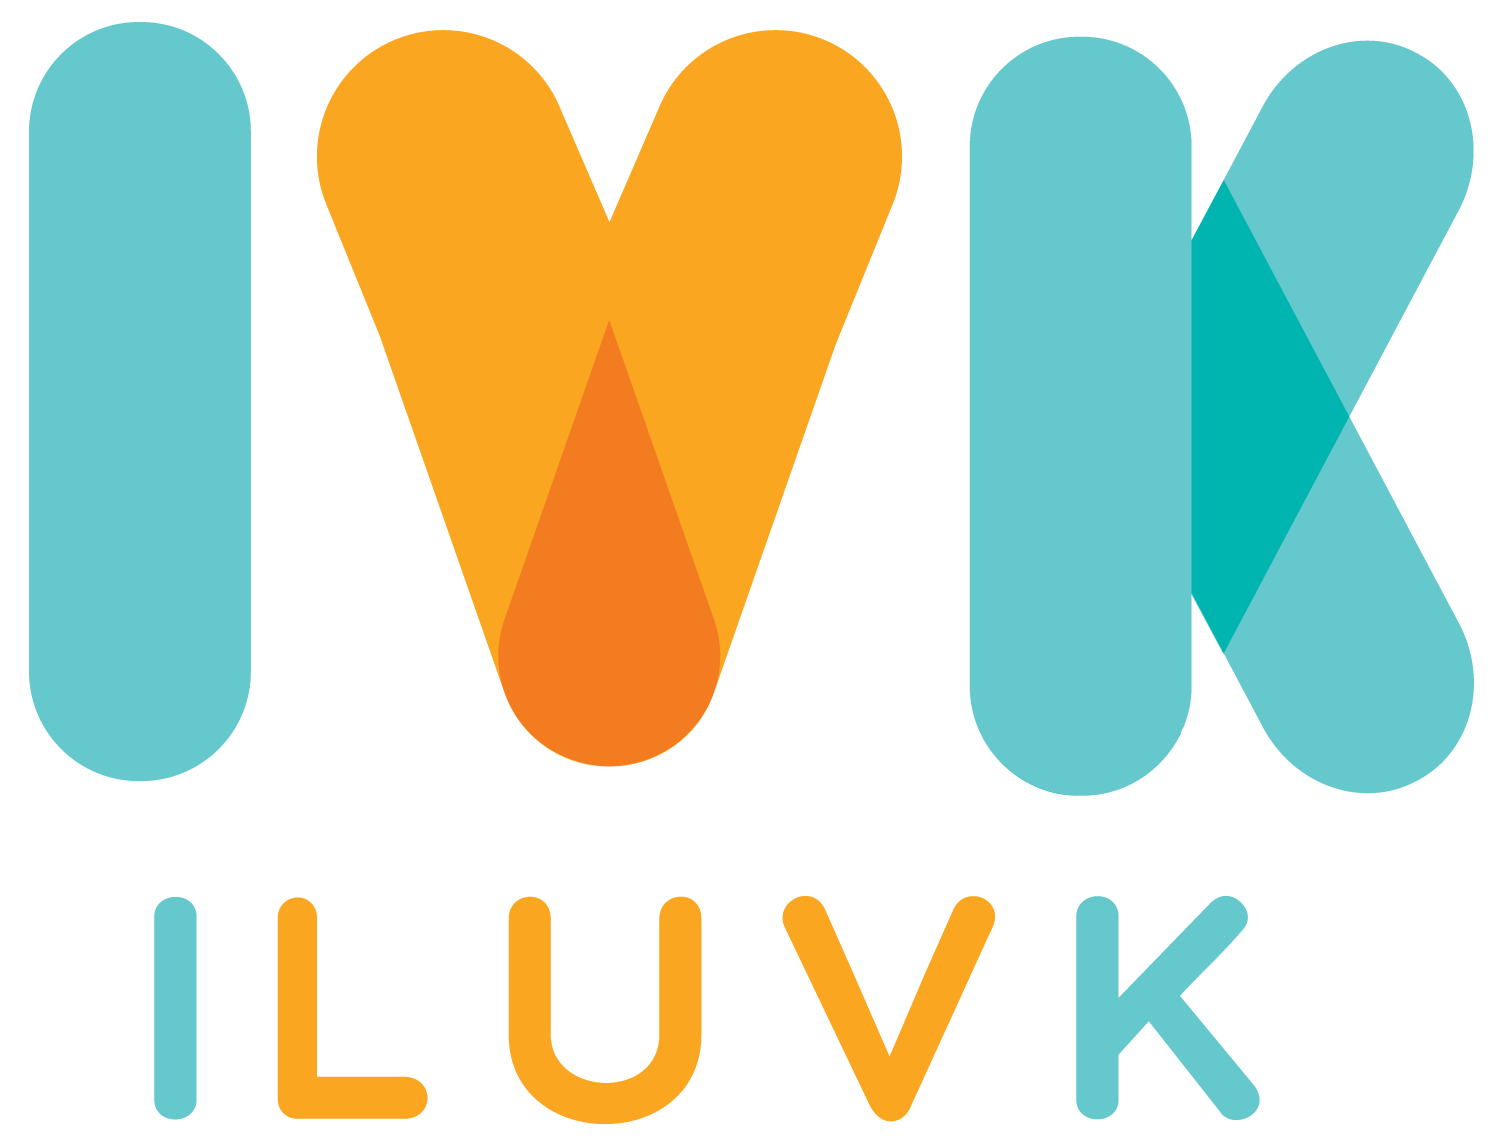 iluvk.vn